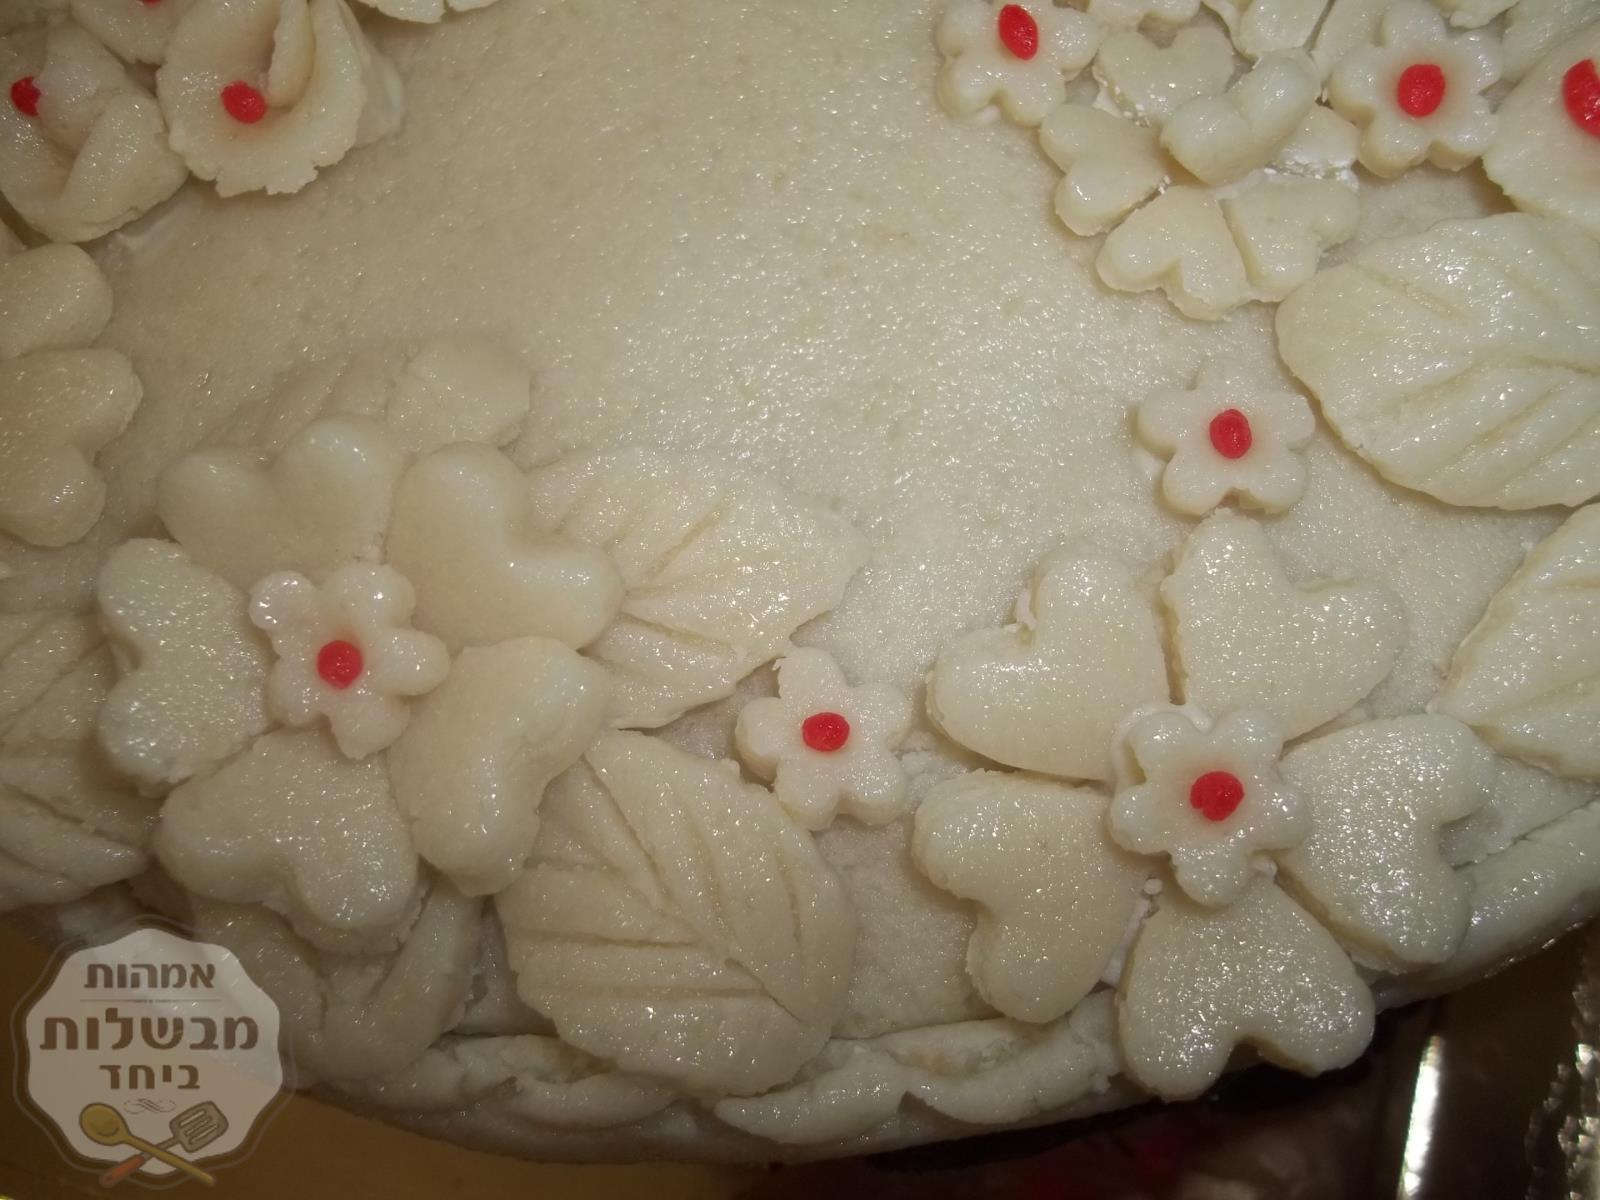 עוגה   בציפוי מרציפן  משולבת  בכל מיני וארייציות    ניפלאה   טעימה   מאד 